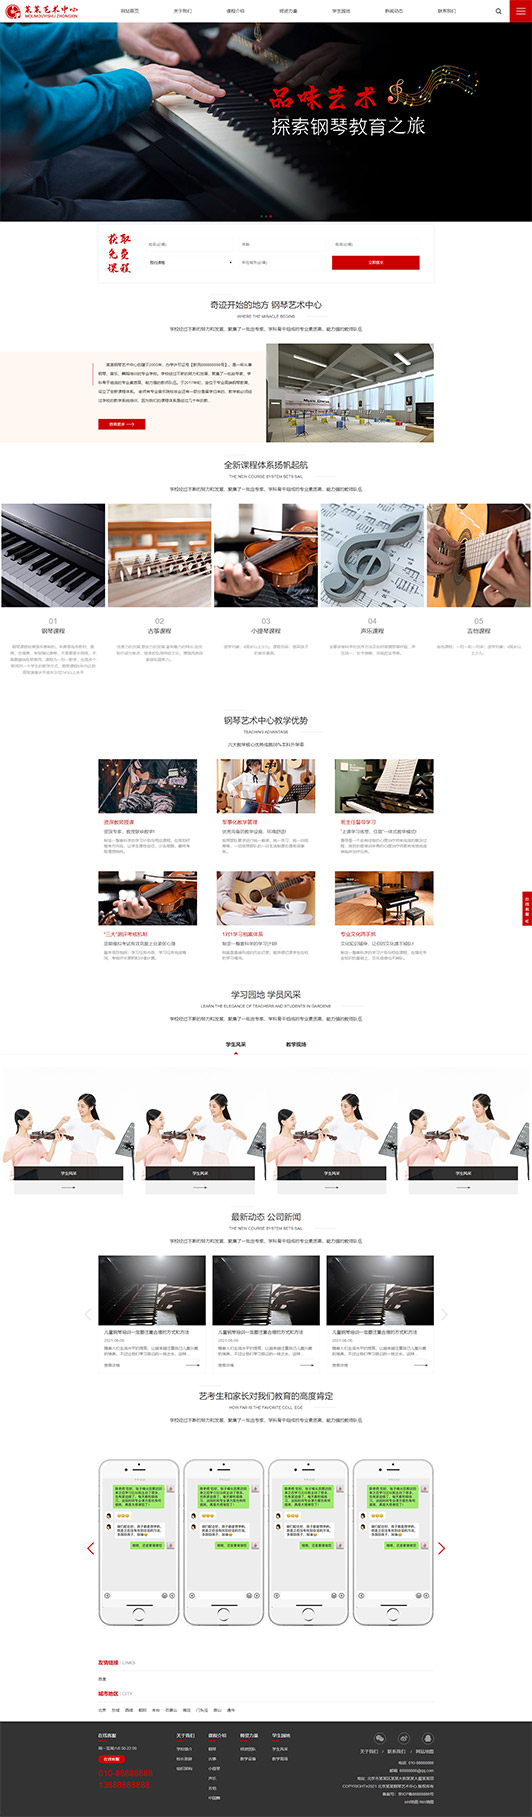 岳阳钢琴艺术培训公司响应式企业网站